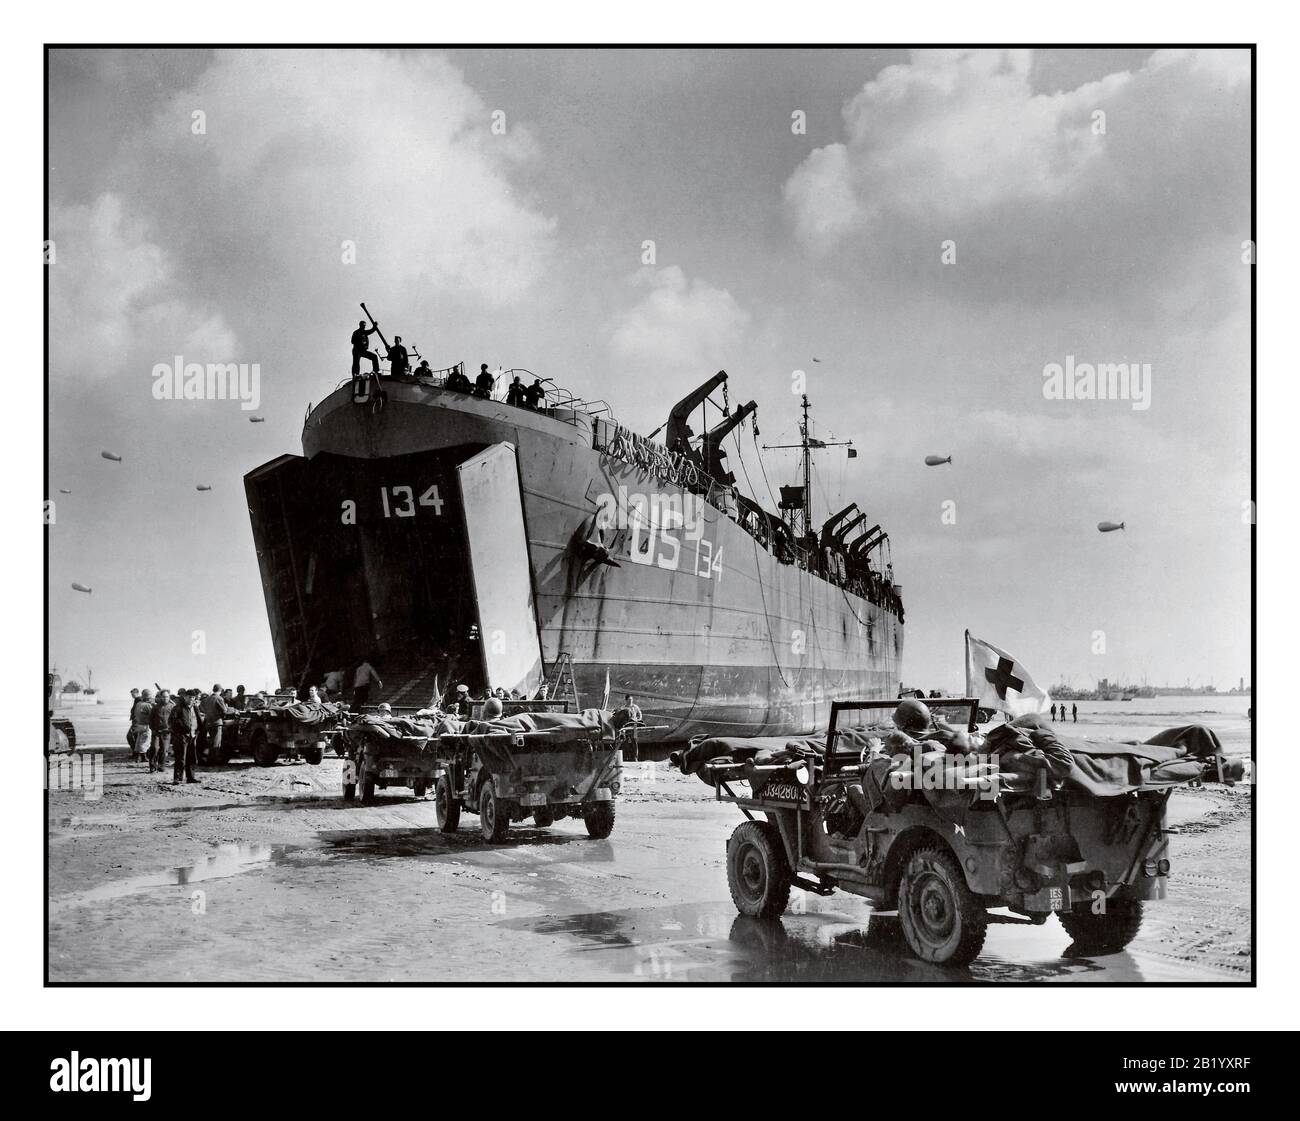 D-Day+6 Operazione seconda guerra mondiale Overlord perdite americane US Navy LST-134 e LST-325 in camicia in Normandia Francia, come jeep guida lungo l'invasione spiaggia portare le vittime alle navi in attesa, 12 giugno 1944 WW2 Seconda guerra mondiale Foto Stock